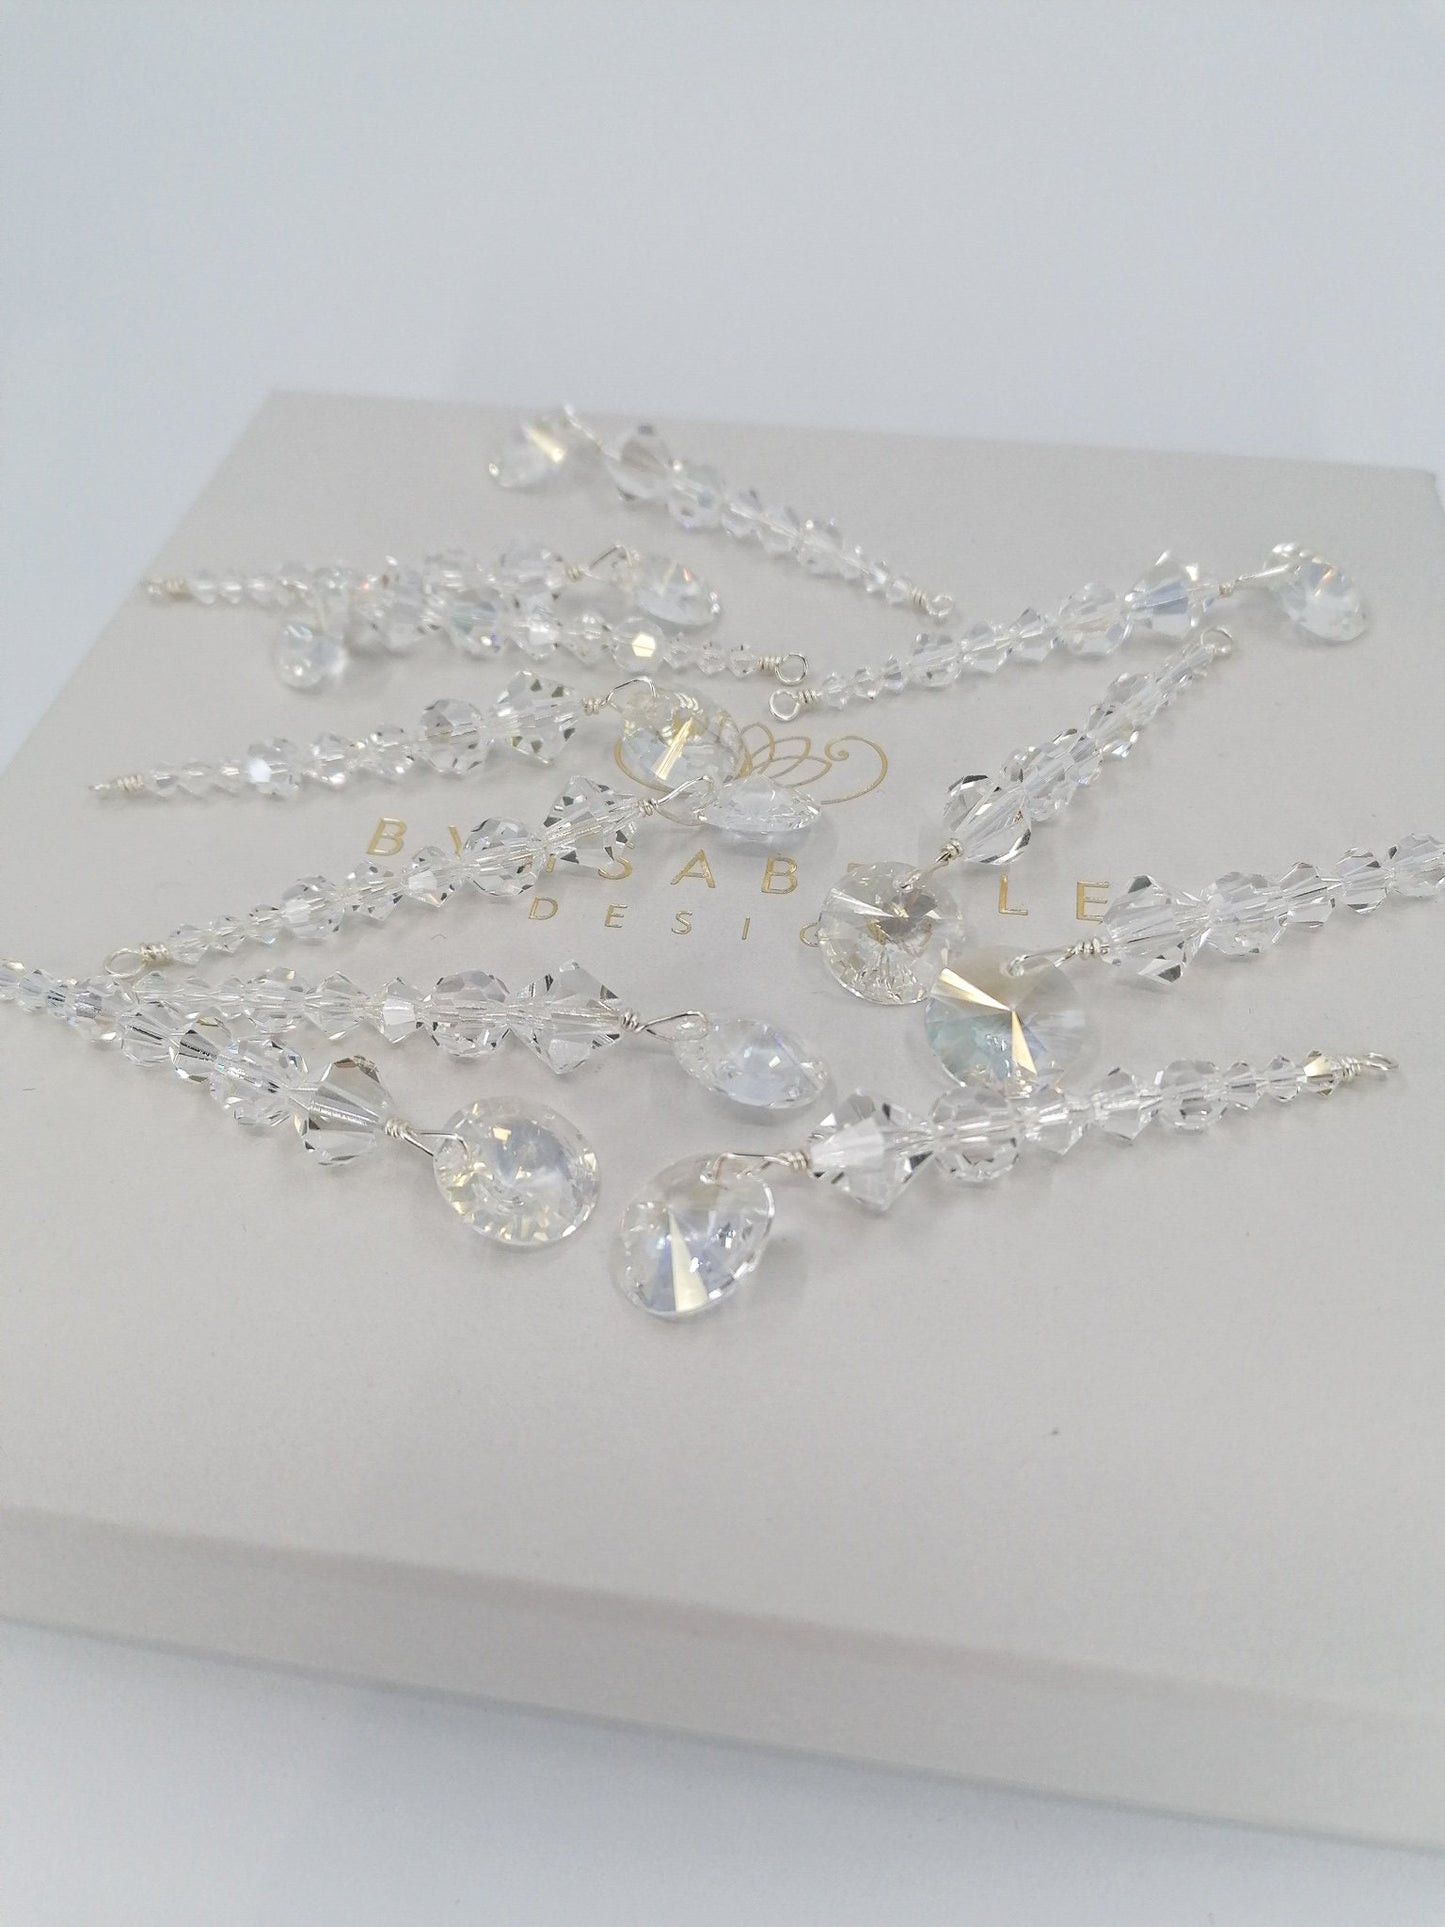 Preciosa crystal chandelier ornaments